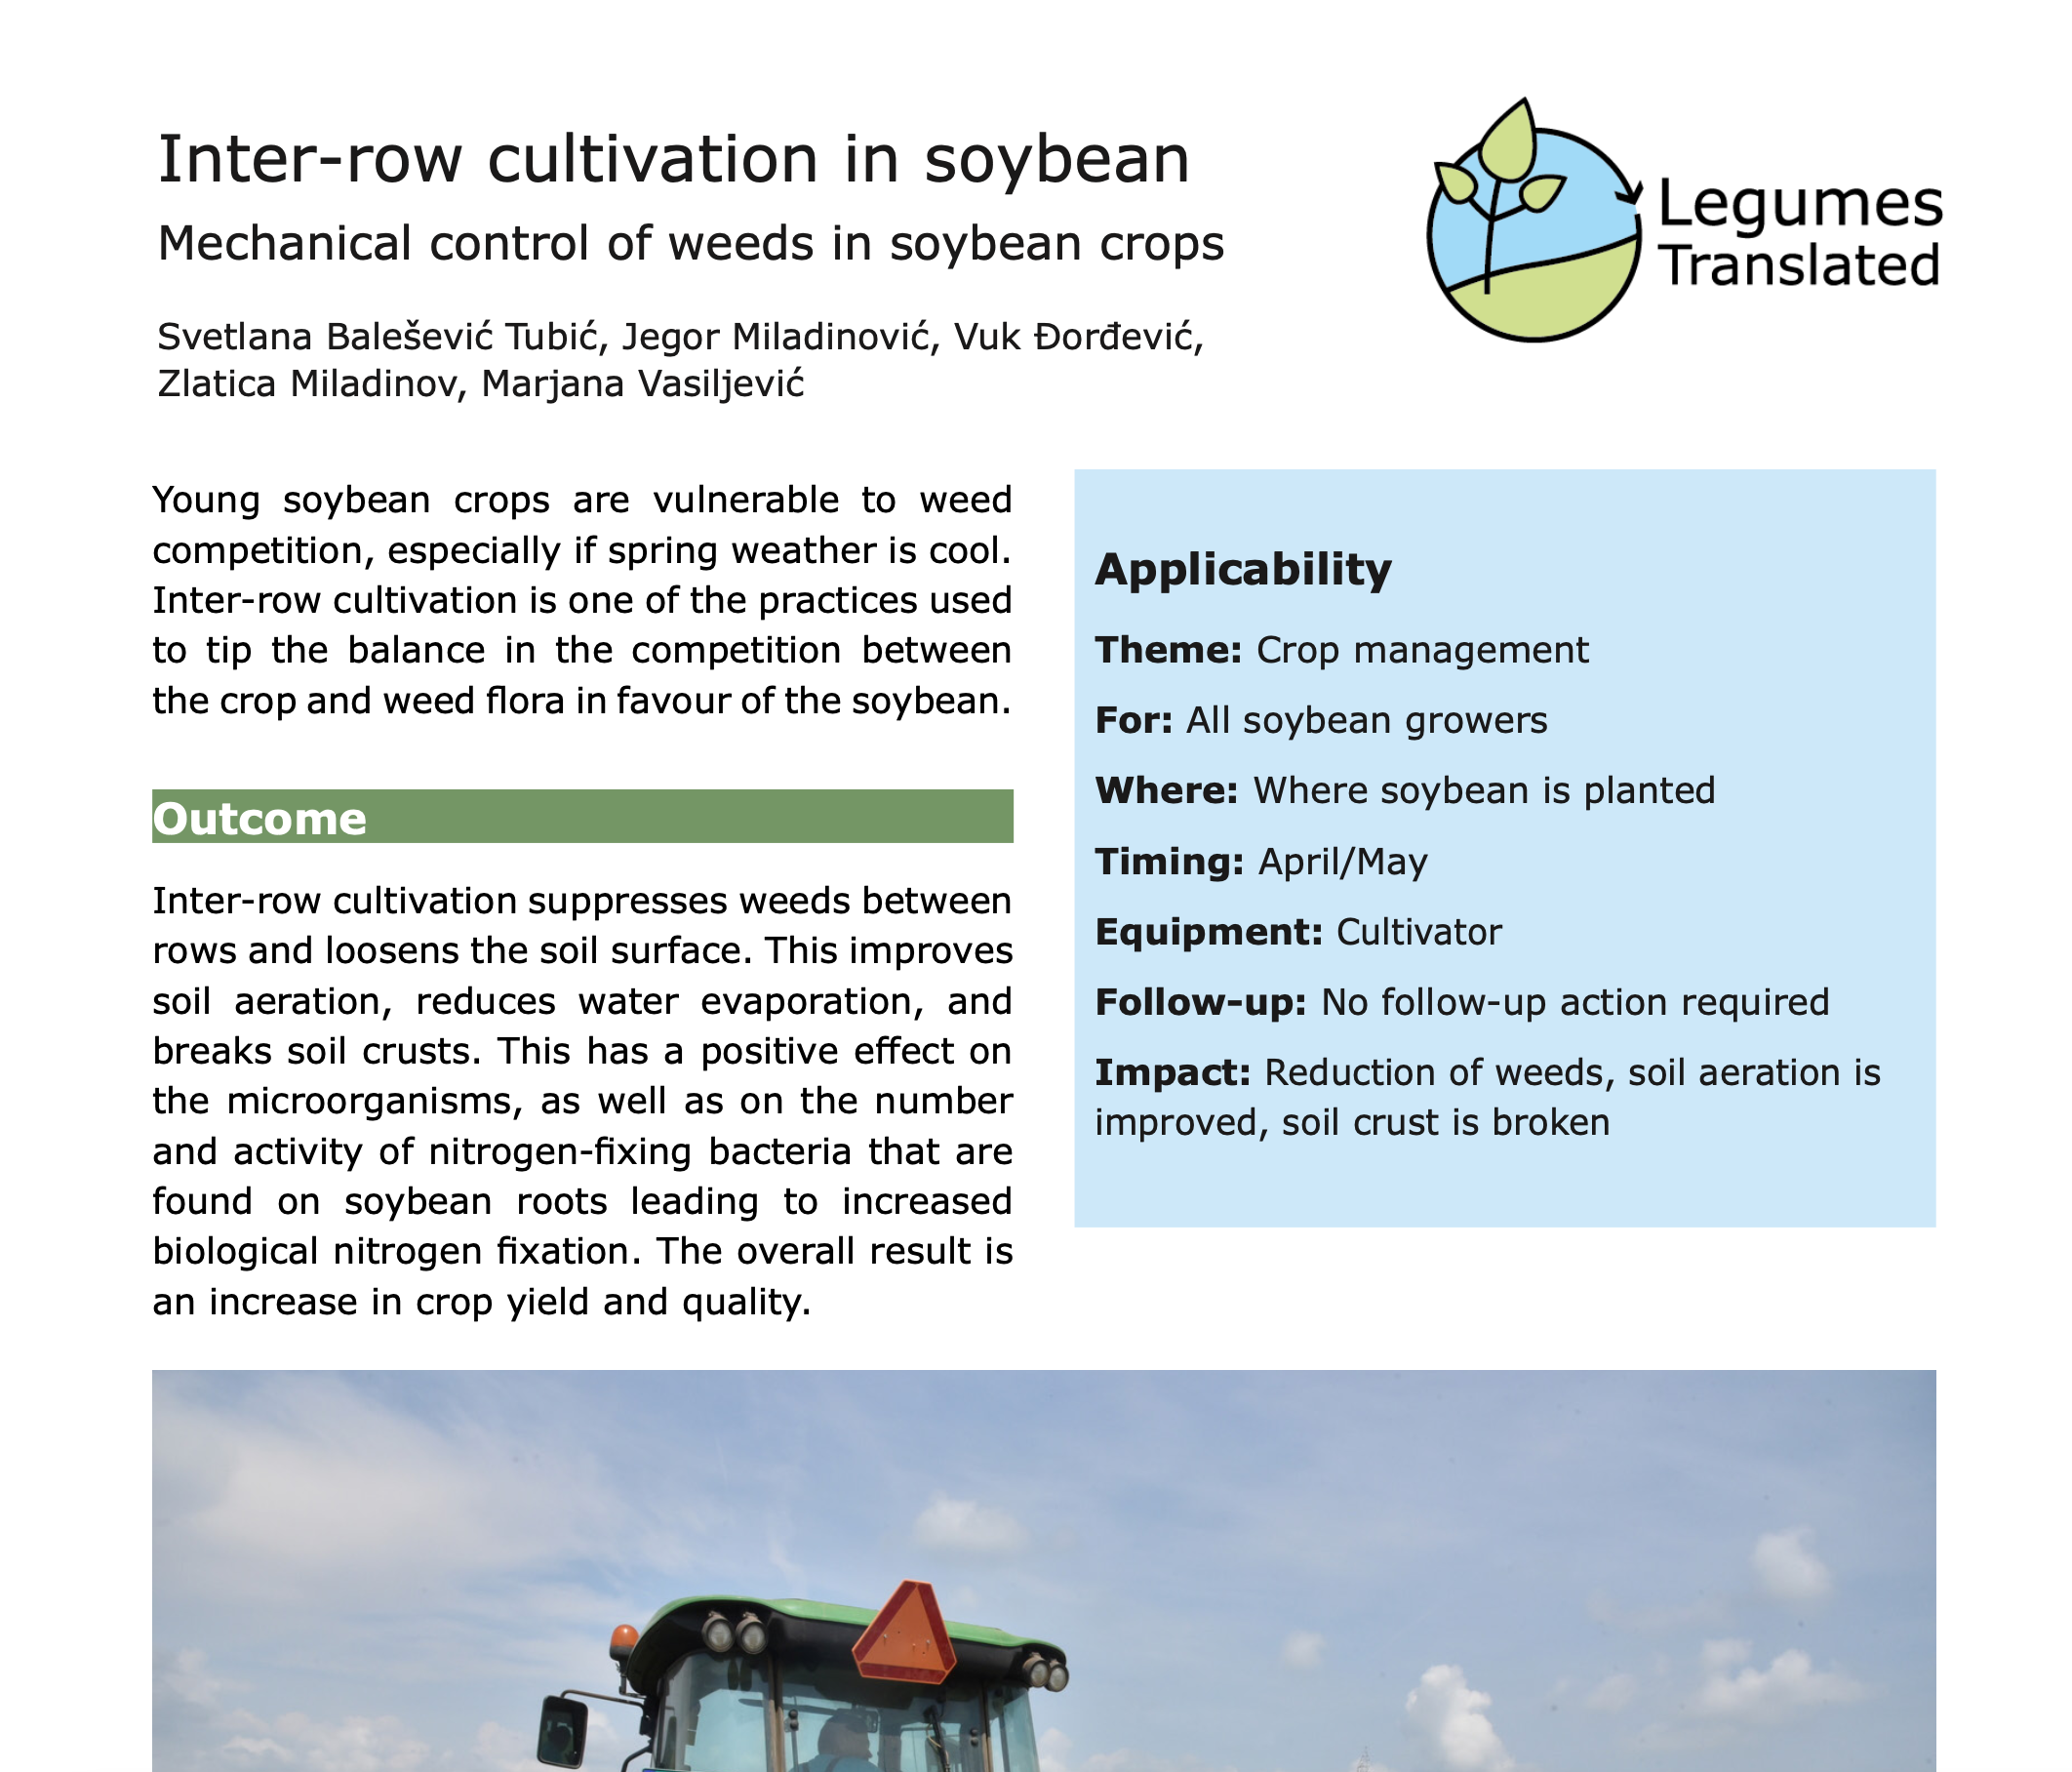 Καλλιέργεια μεταξύ σειρών - Μηχανική καταπολέμηση ζιζανίων σε καλλιέργειες σόγιας